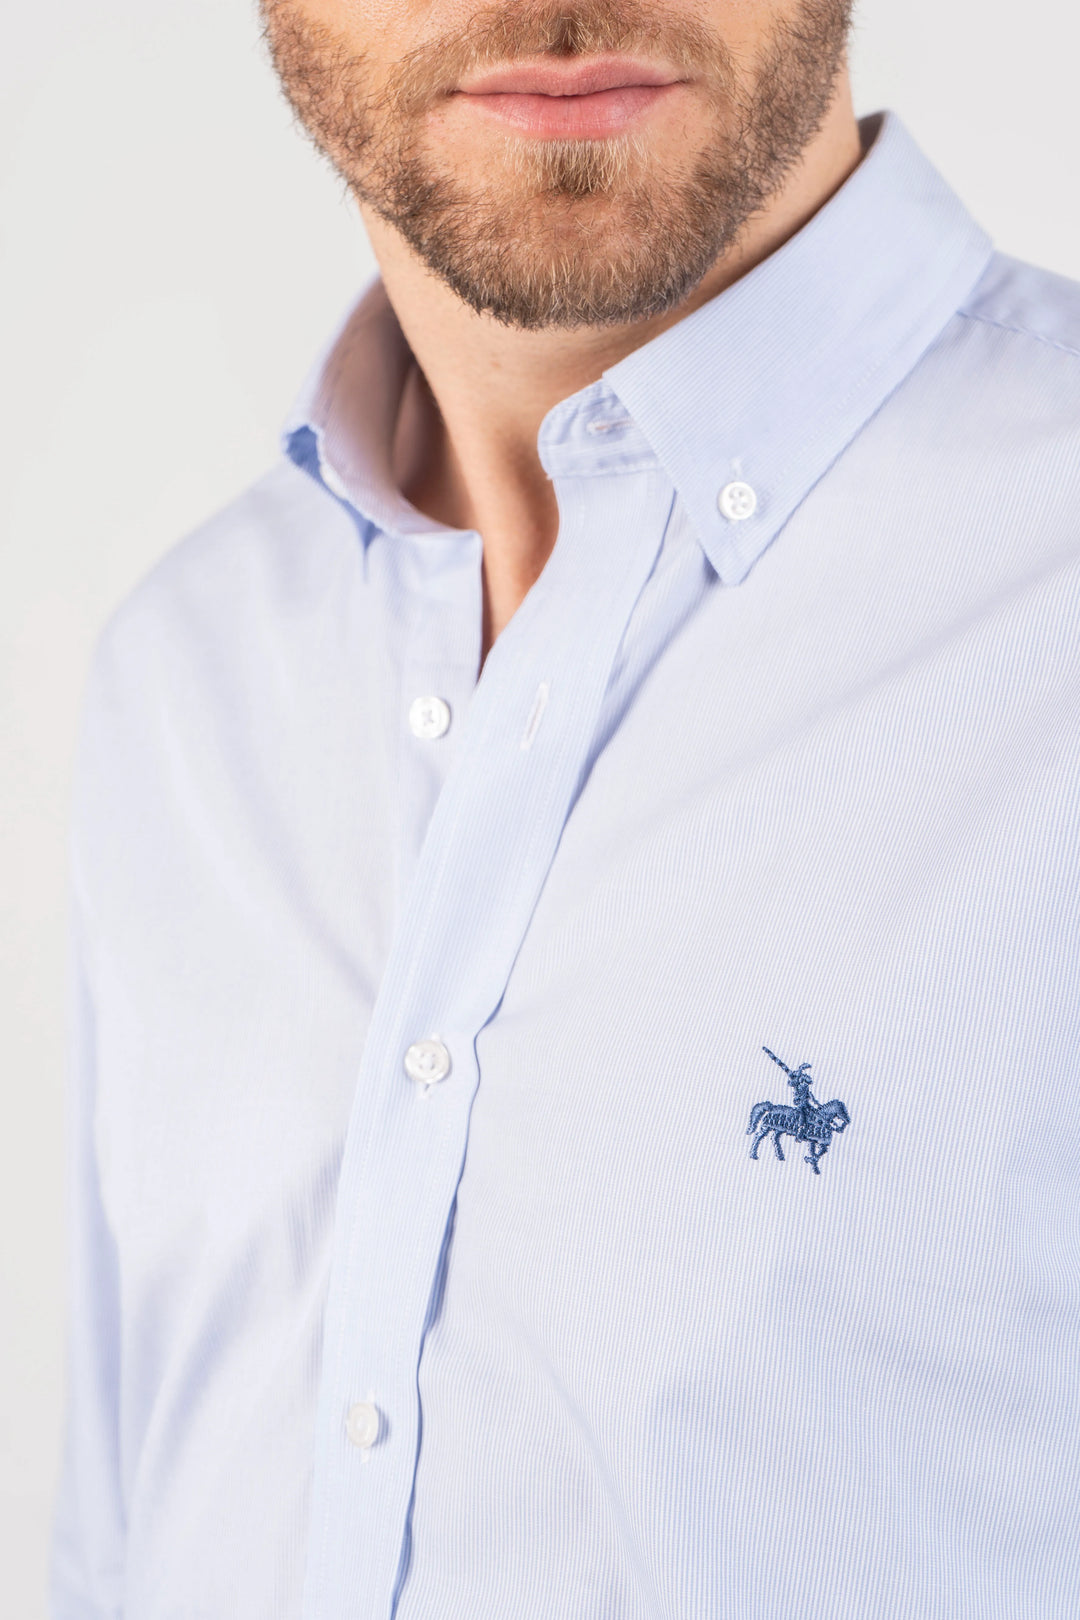 Camisa hombre azul clara manga larga. Imagen detalle del cuello y logo bordado. Camisa ideal para ocasiones formales.